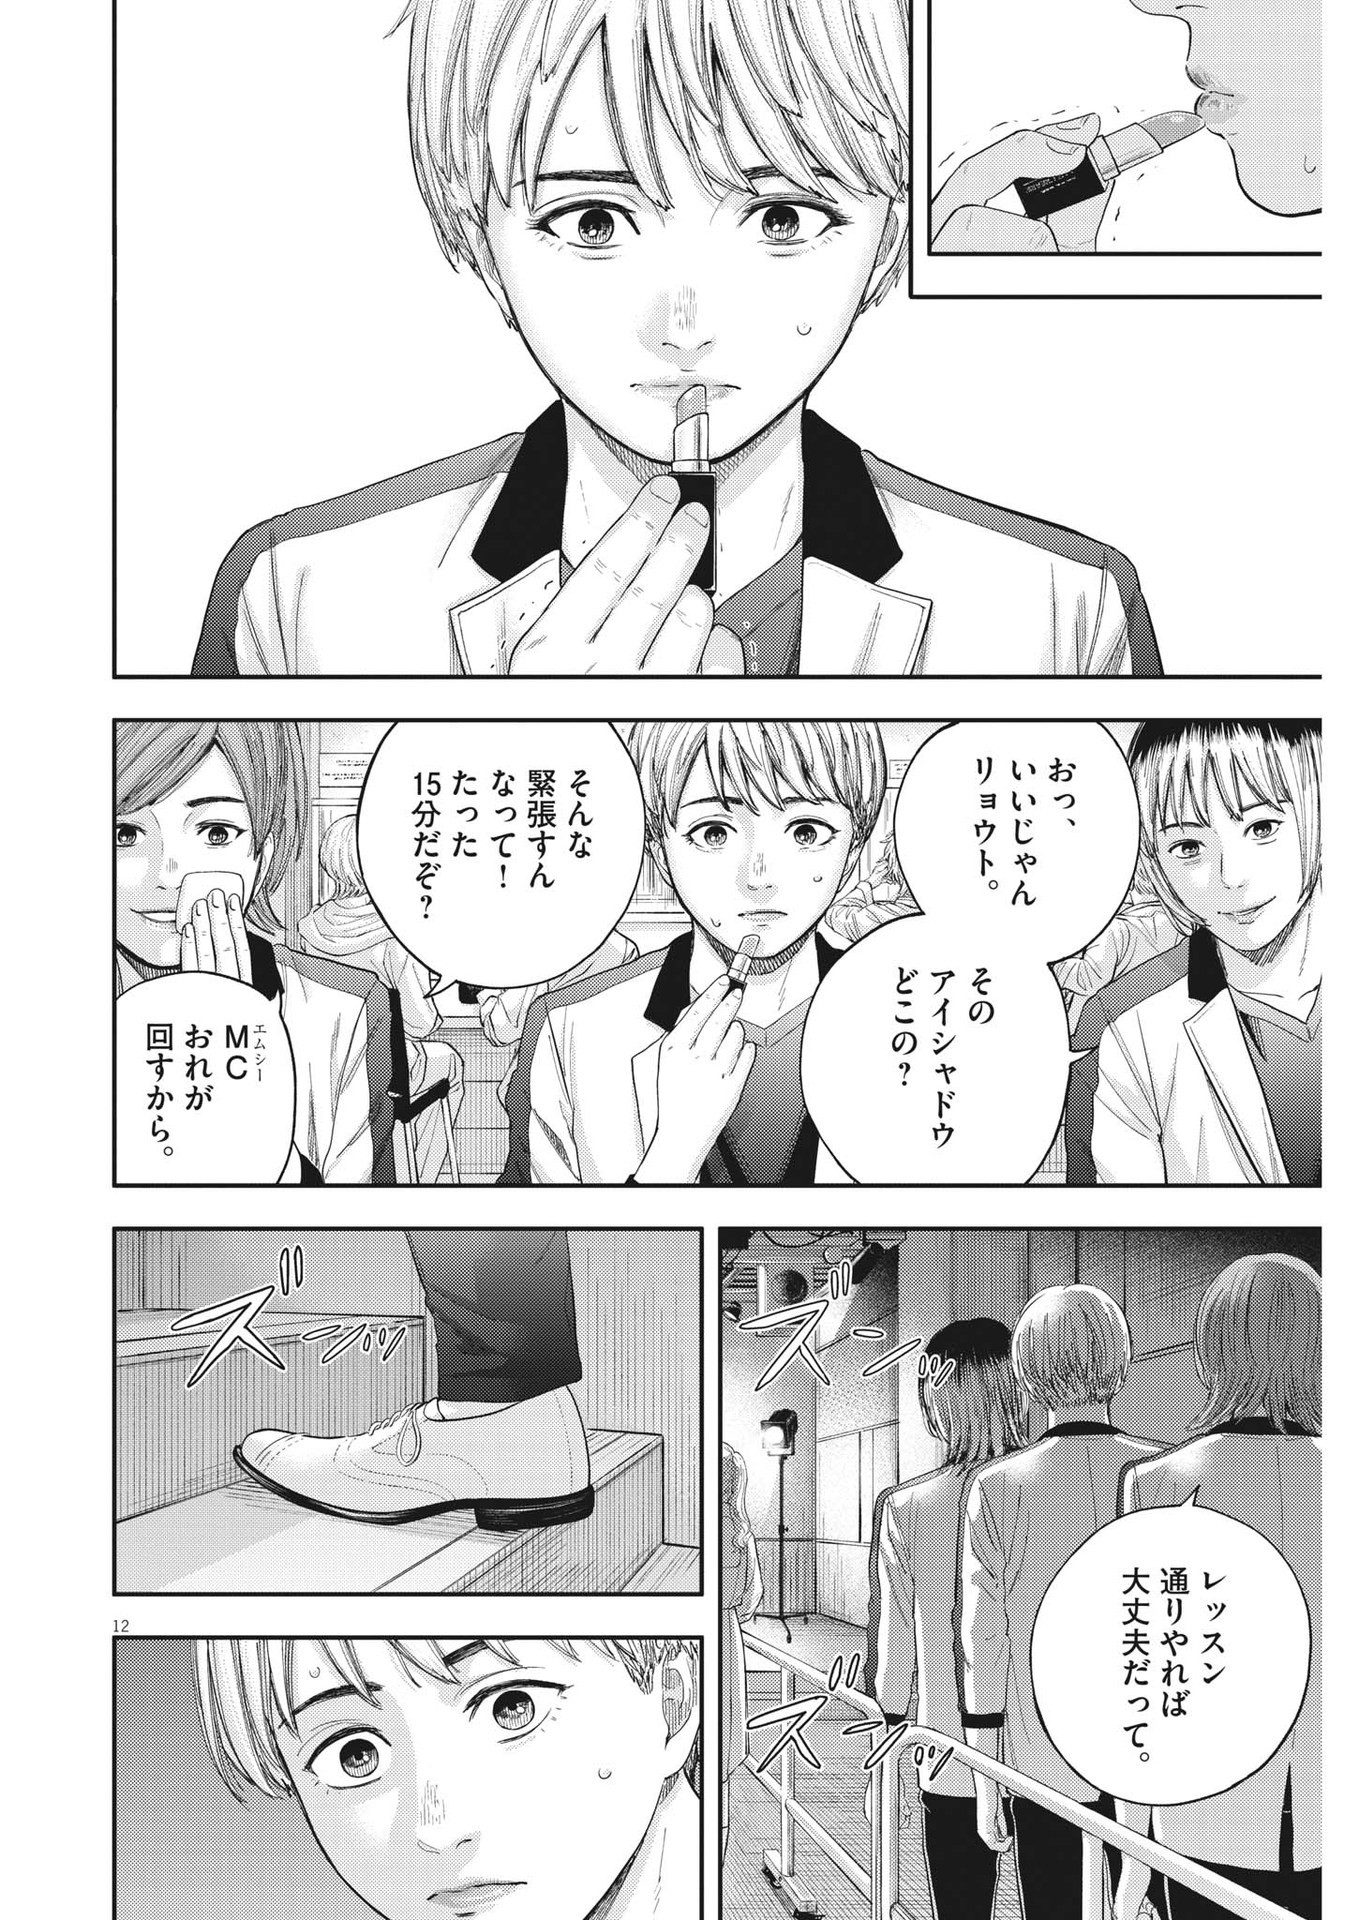 Yumenashi-sensei no Shinroshidou - Chapter 8 - Page 12